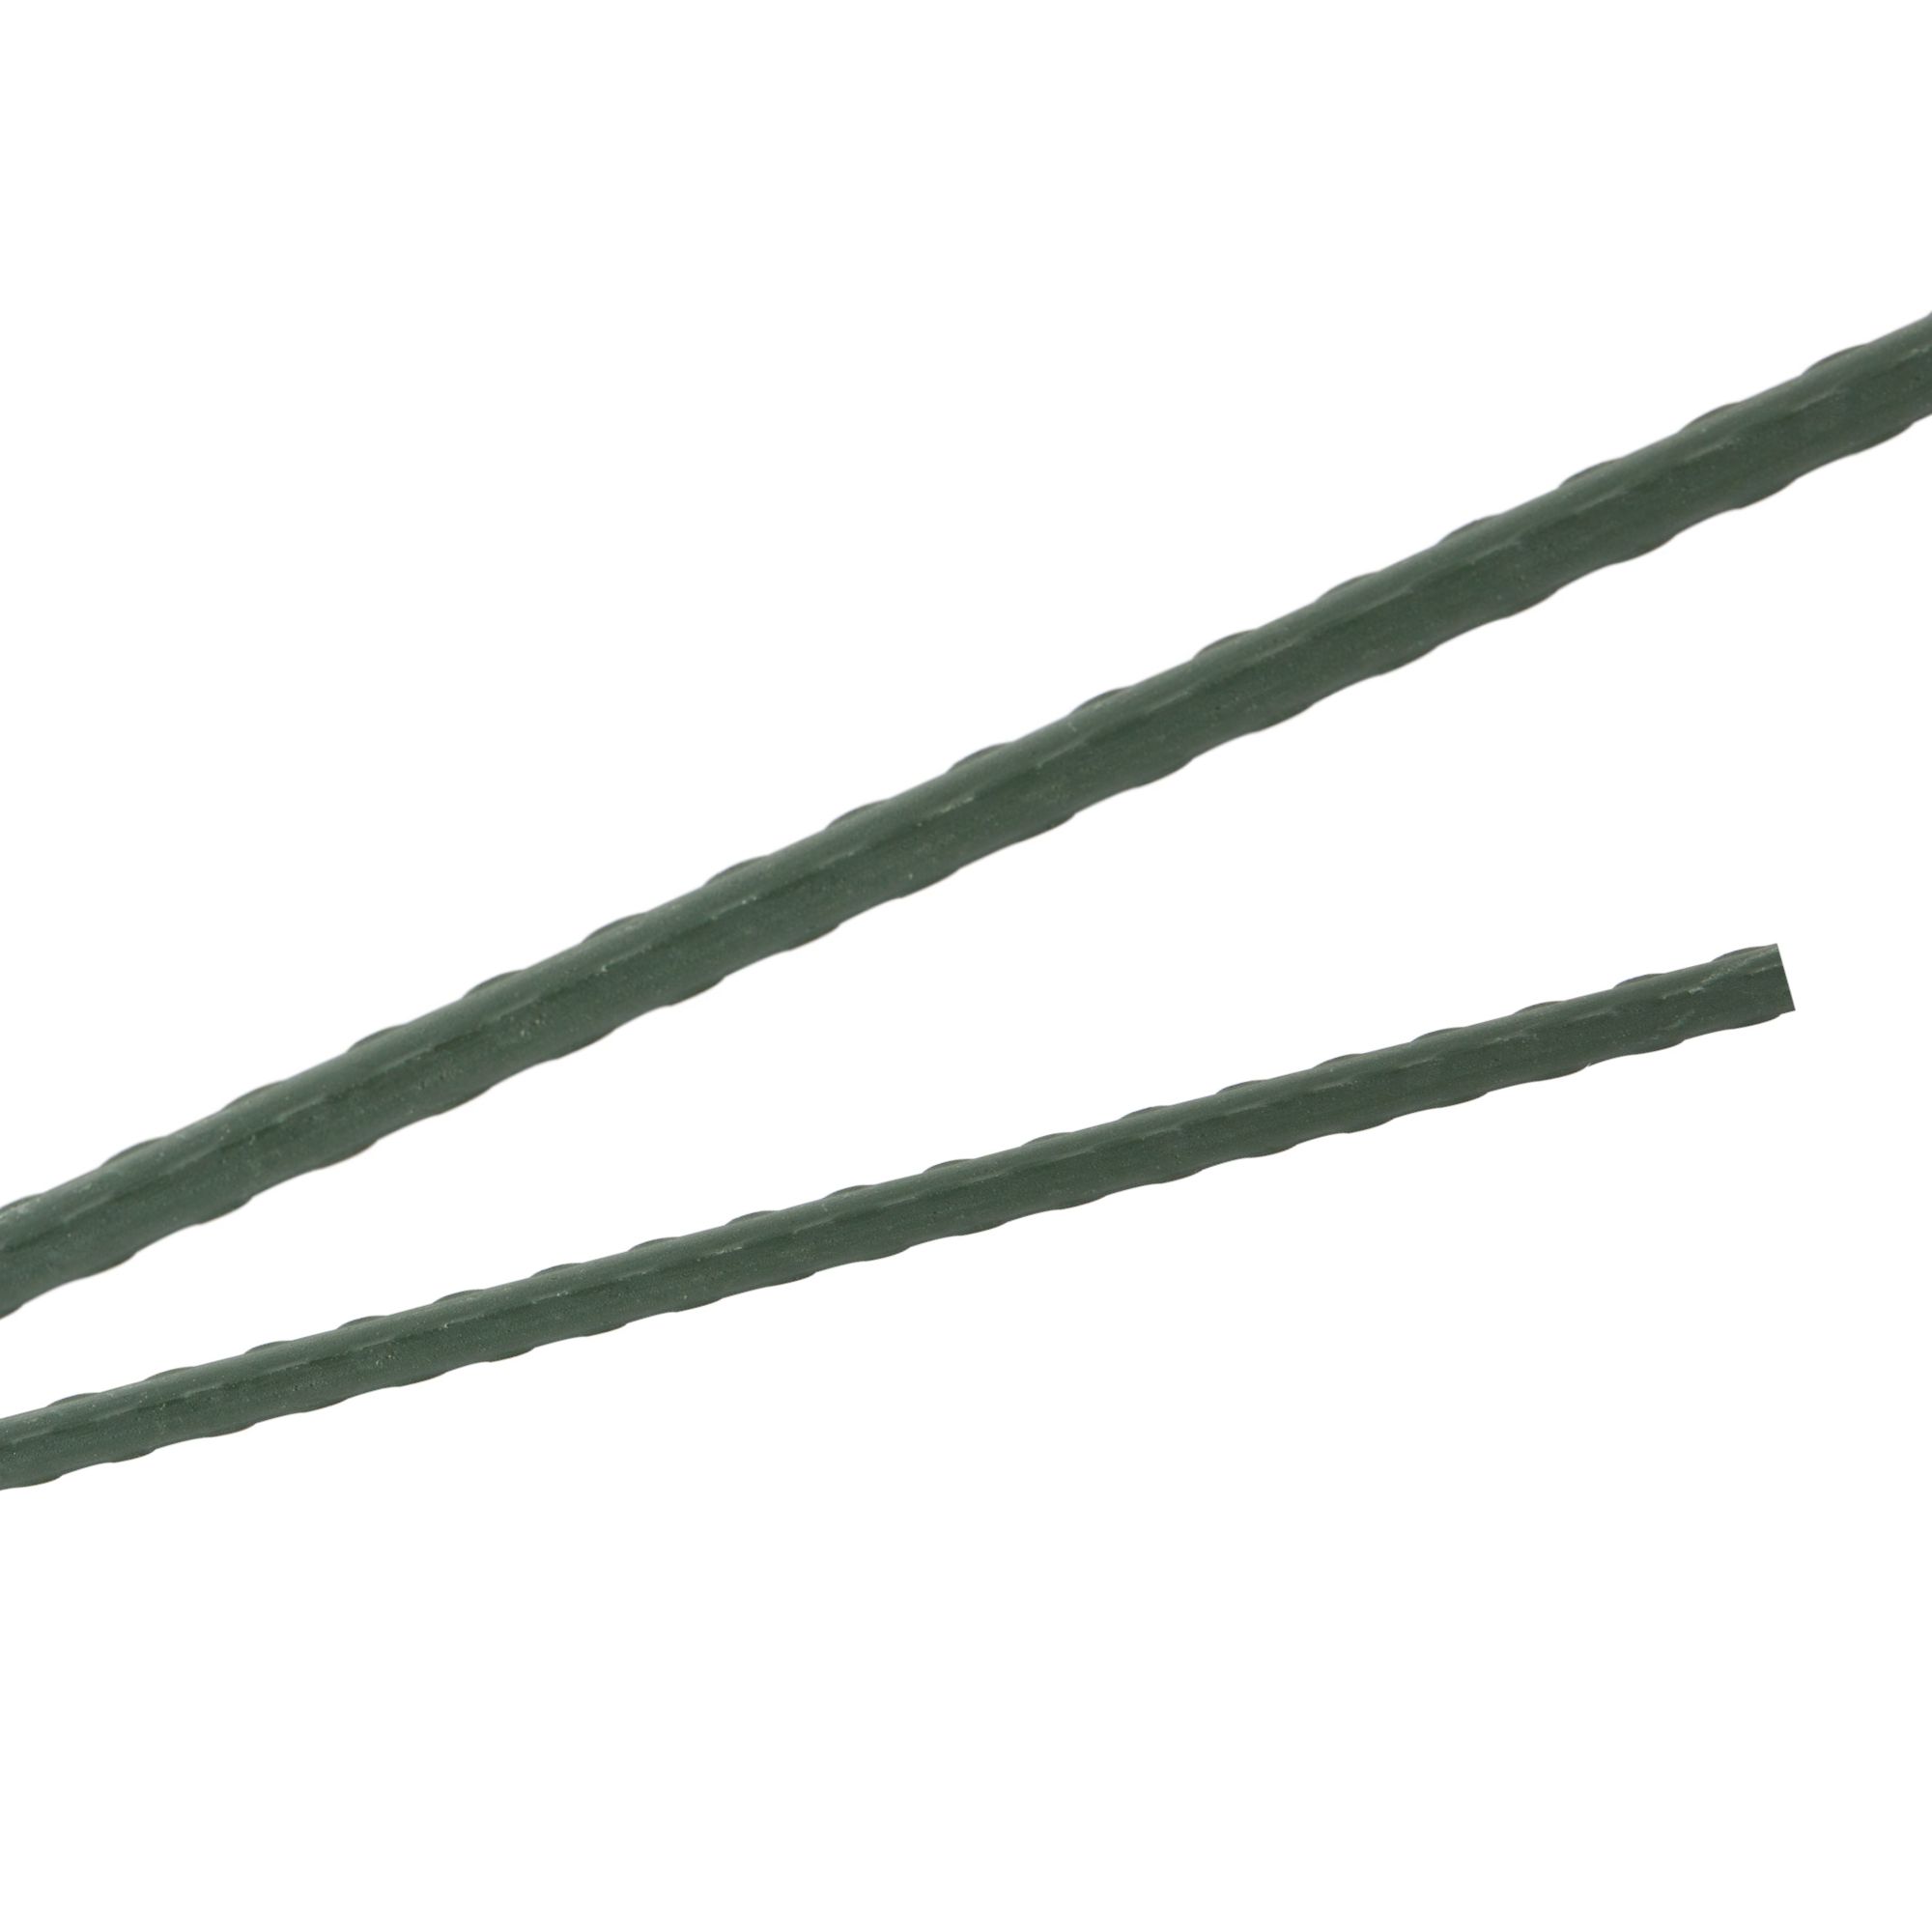 Tyč podpěrná, 20mm, 180cm, kov+PVC, zelená 0.280000 Kg GIGA Sklad20 211770 57